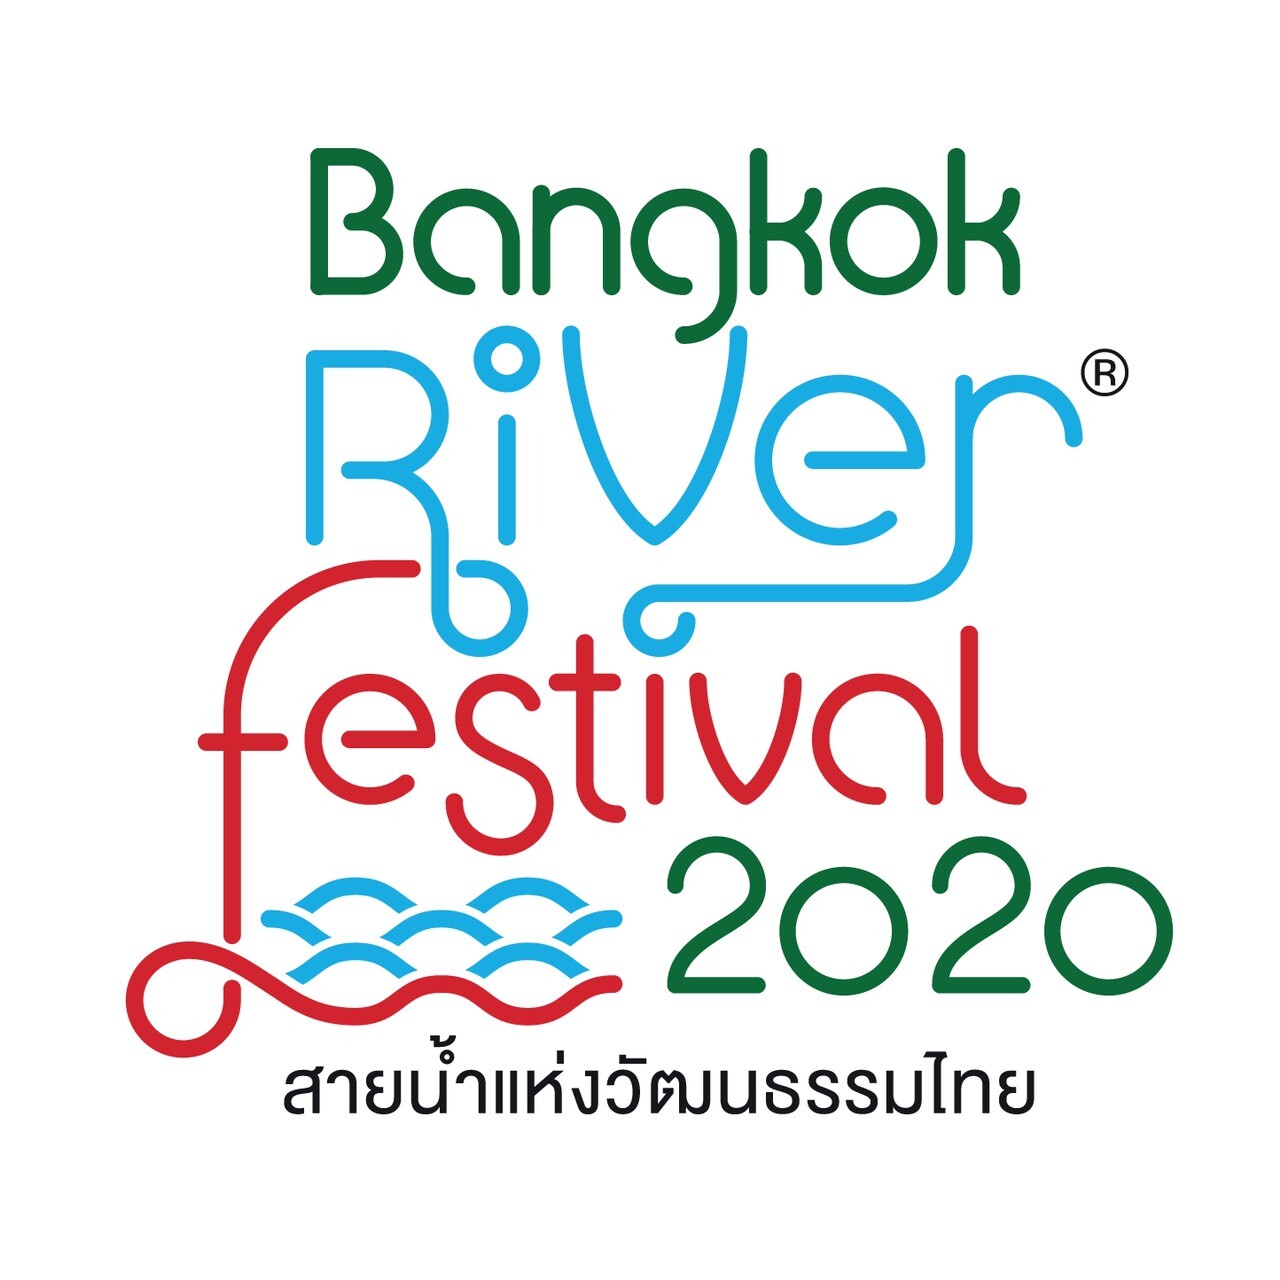 สุดอลังส่งท้ายปี "Bangkok River Festival 2020" ครั้งที่ 6 ร่วมลอยกระทงและท่องเที่ยววิถีไทย สัมผัสมนต์เสน่ห์วัฒนธรรมไทยริมสายน้ำเจ้าพระยา